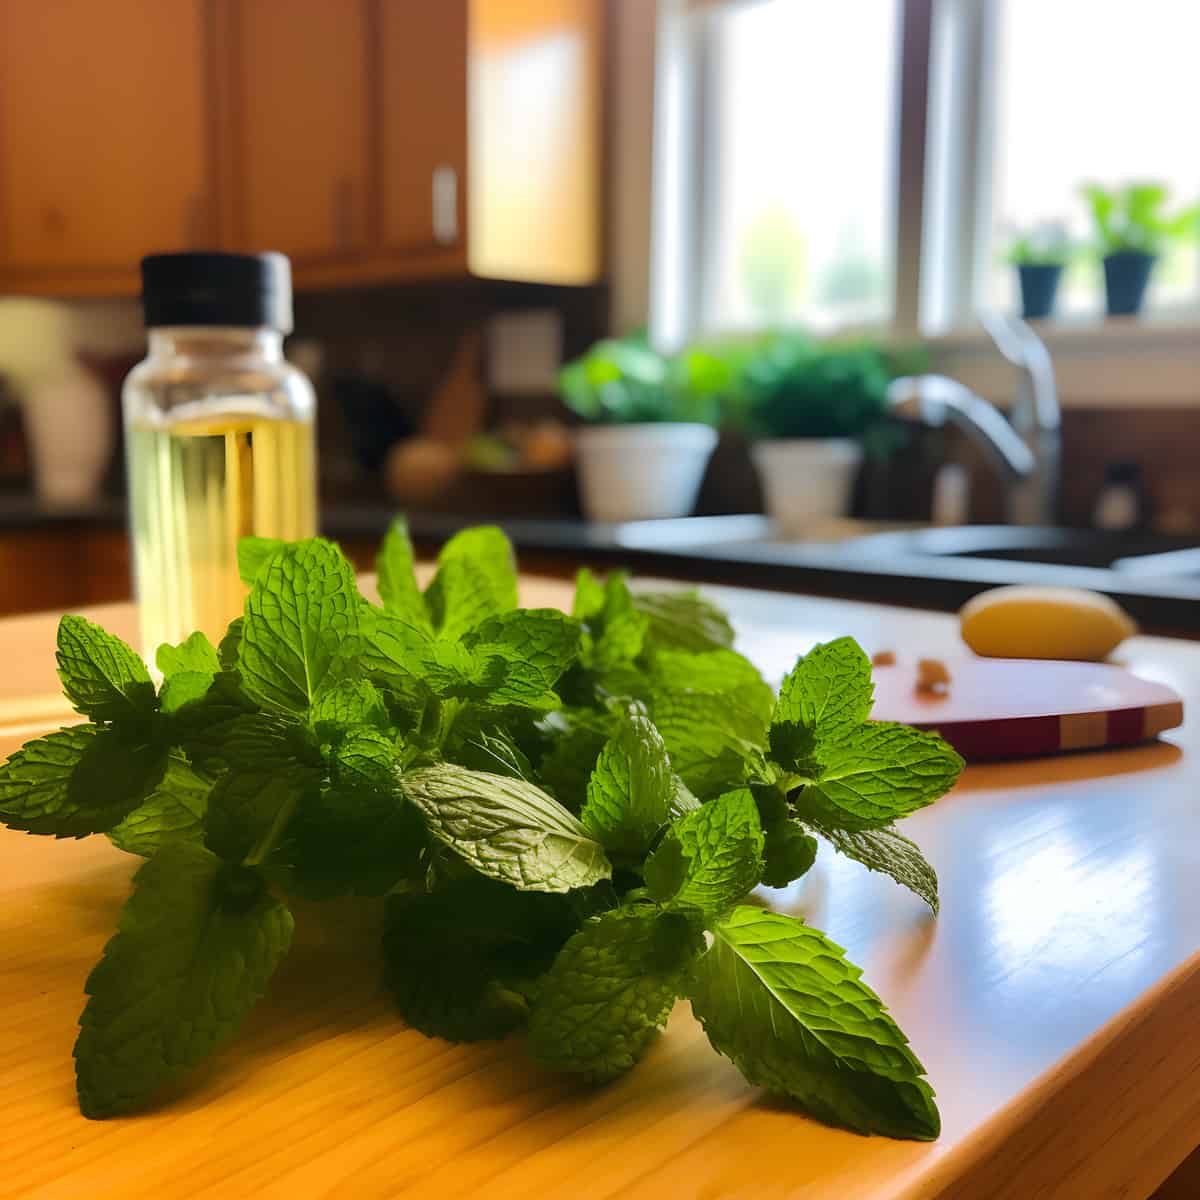 Lemon Balm on a kitchen counter